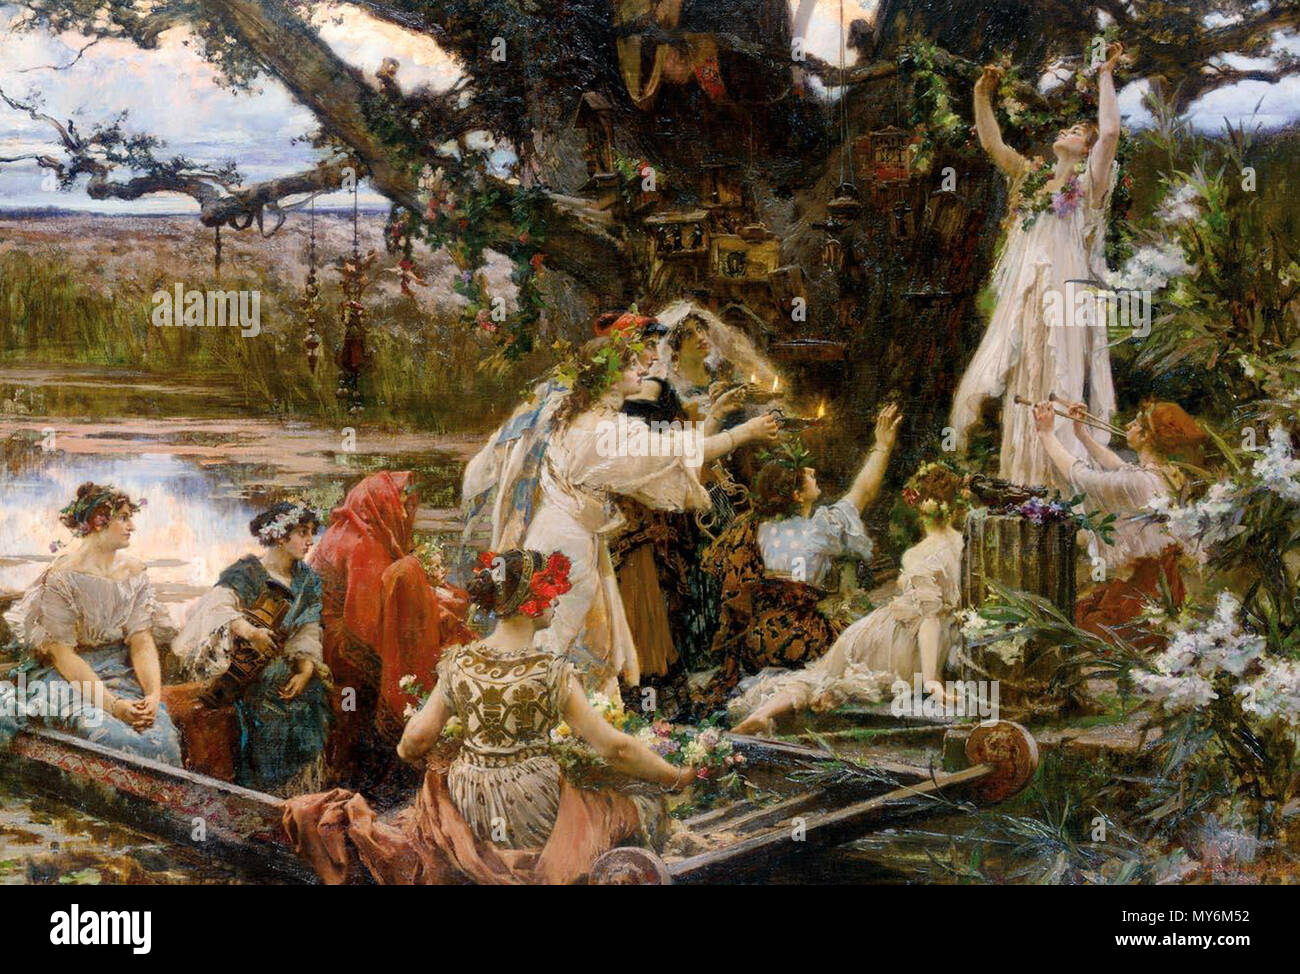 436 PRADILLA - Bajo el árbol consagrado a Ceres (Colección particular, 1903. Óleo sobre lienzo, 77,5 x 111 cm) Stock Photo